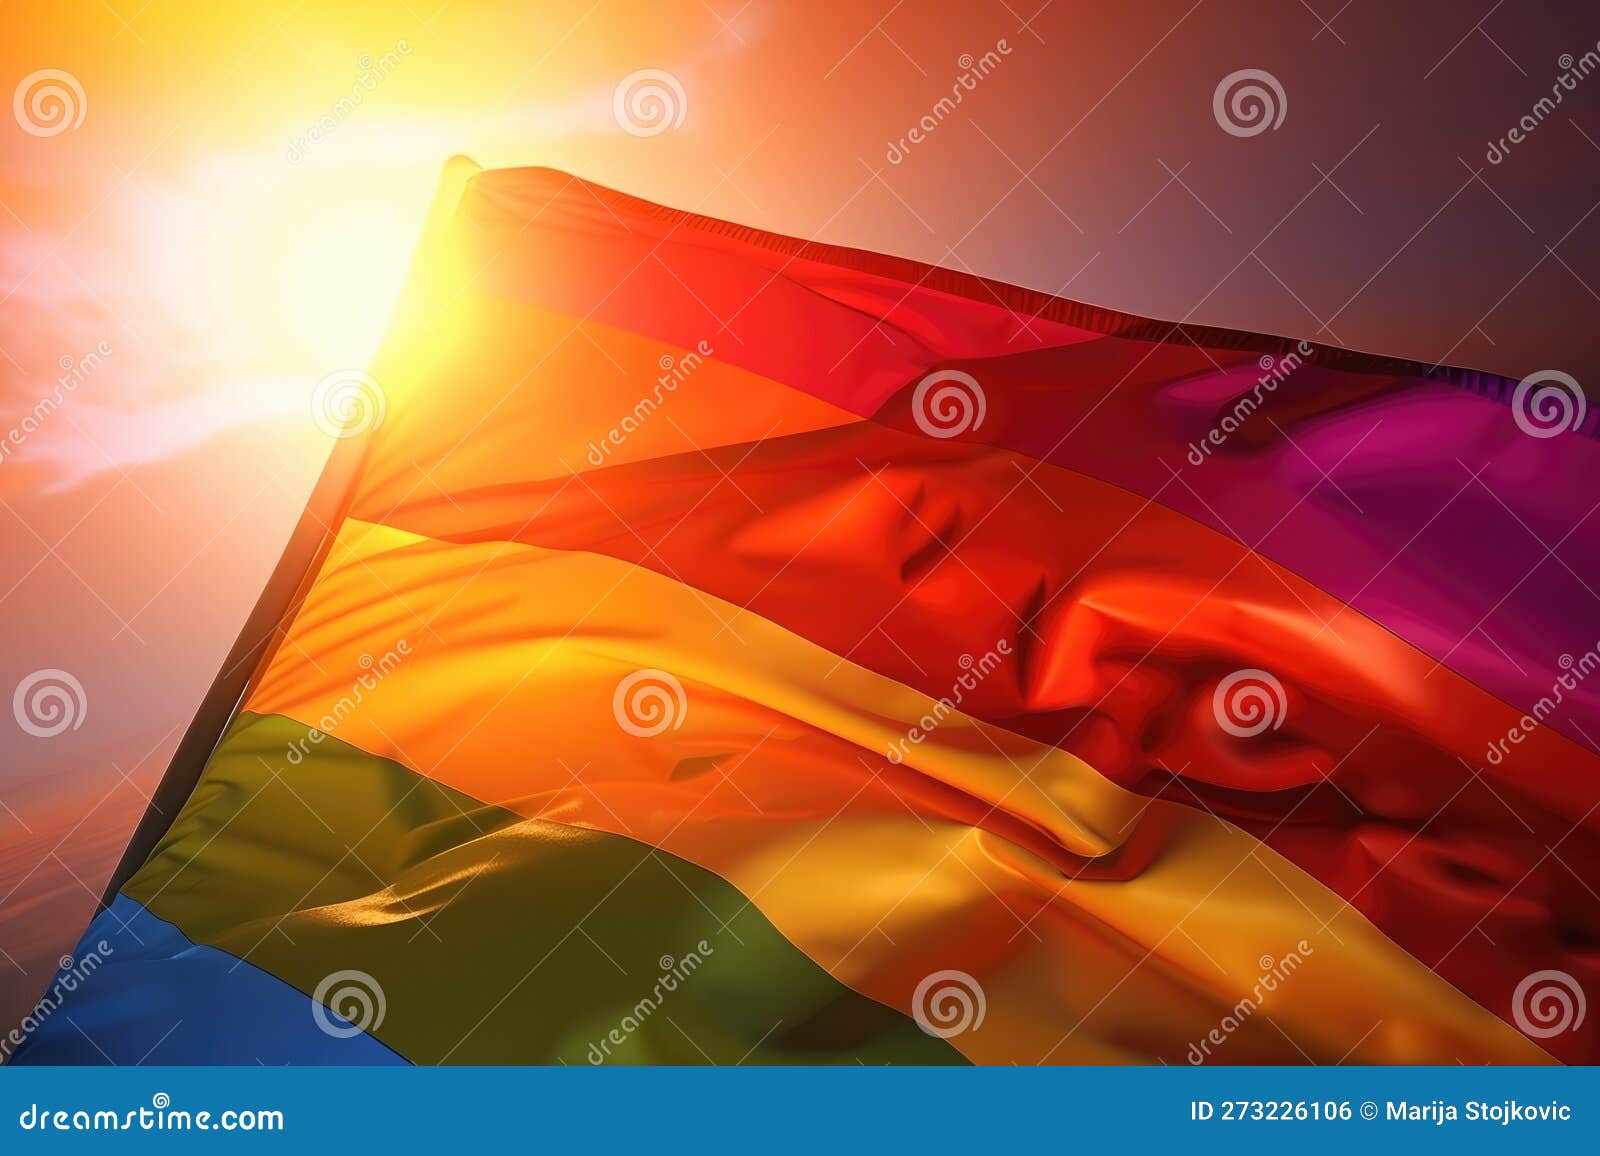 Pañuelo for Sale con la obra Fondo de bandera de arco iris de orgullo  LGBTQ de brillo falso de LiveLoudGraphic  Redbubble